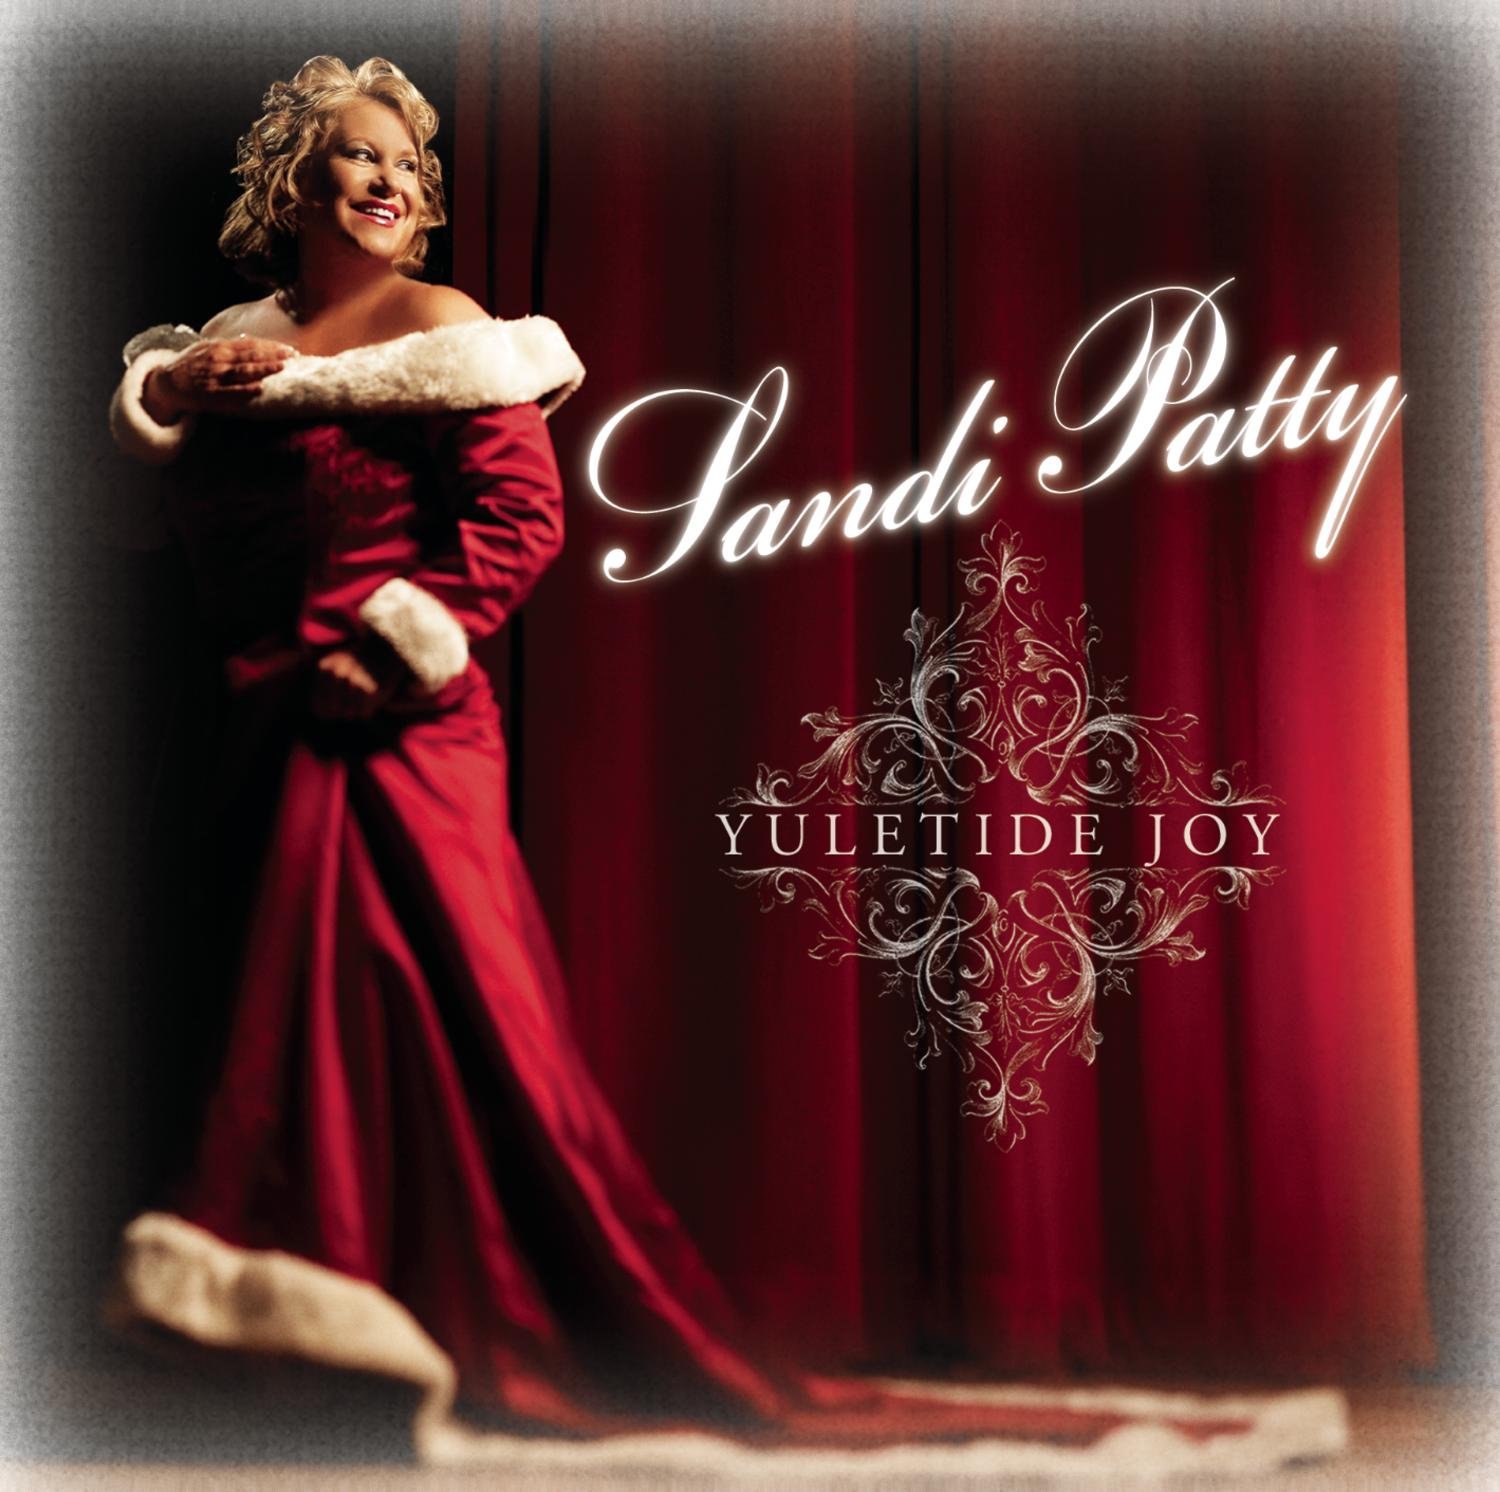 Sandi Patty - Yuletide Joy (CD)